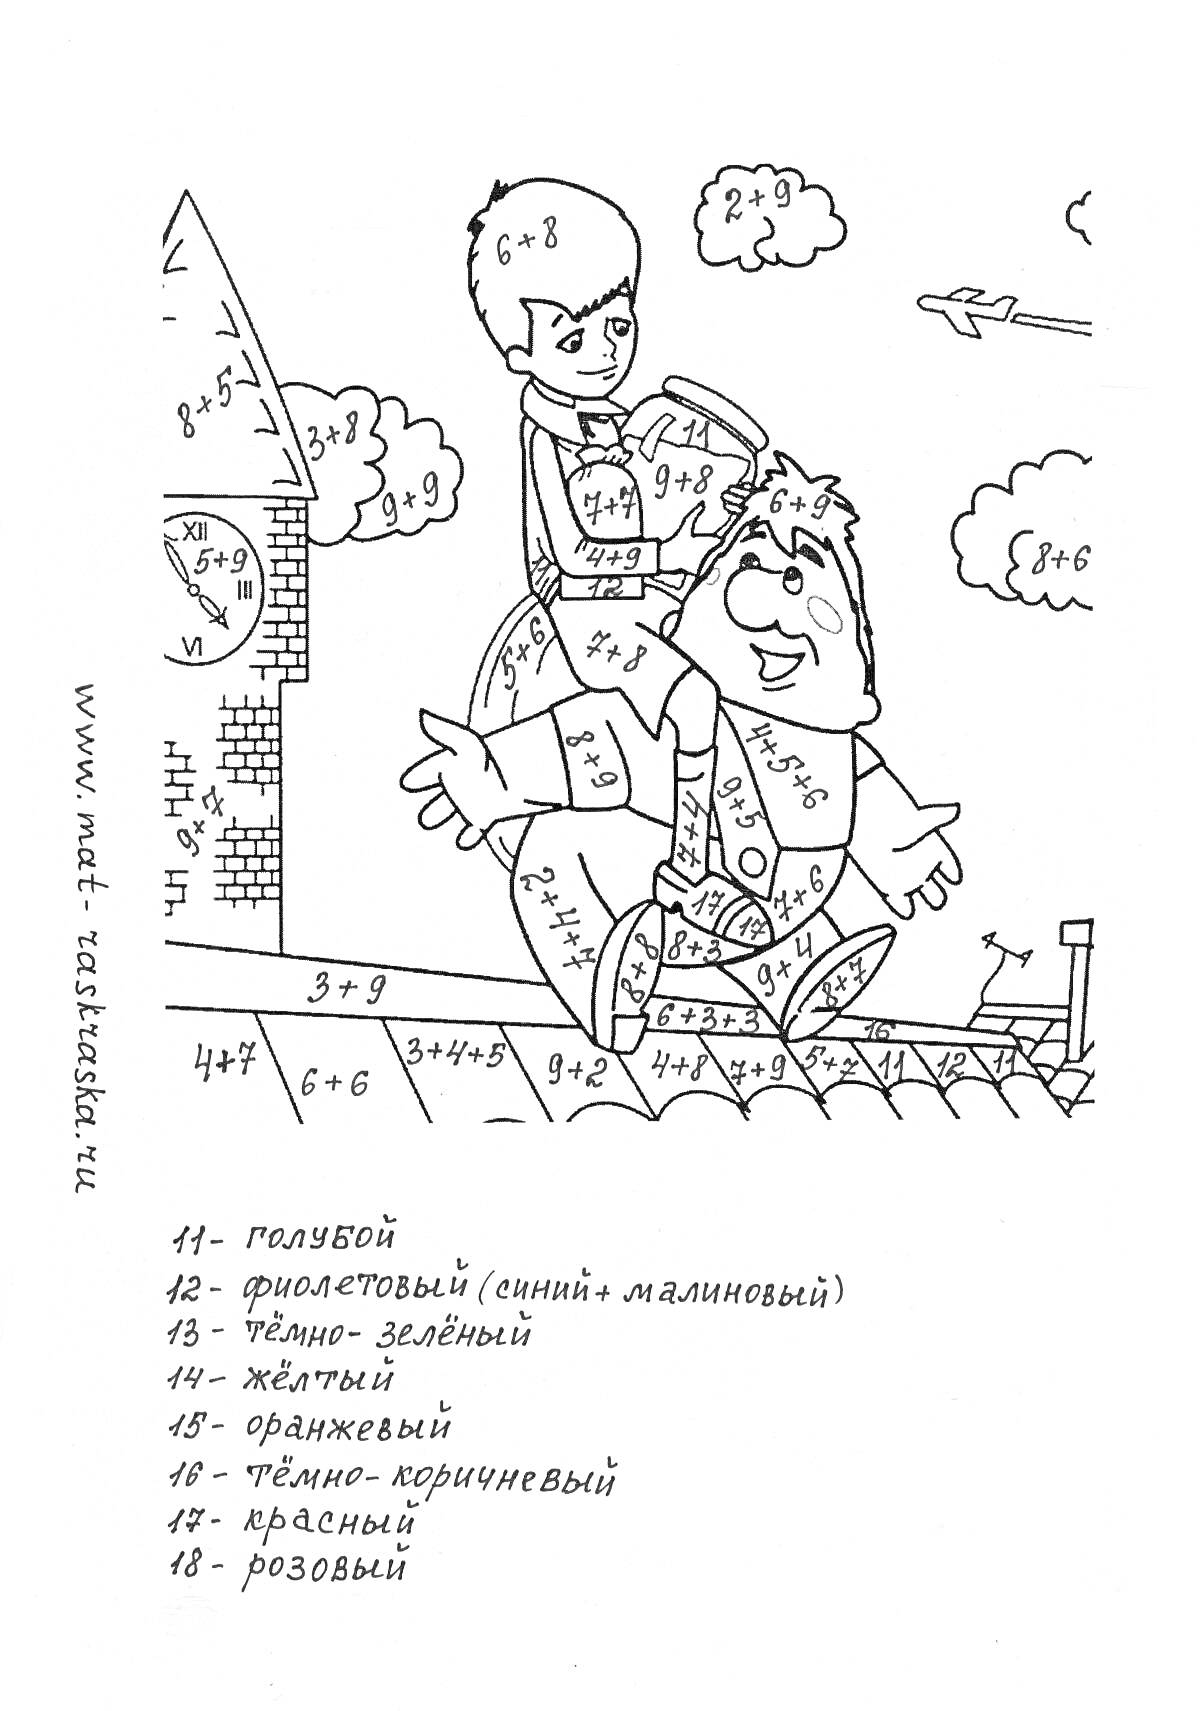 РаскраскаРаскраска по математике для 1 класса - Лето: дом, мальчик на плечах мужчины, забор, облака, солнце, самолет